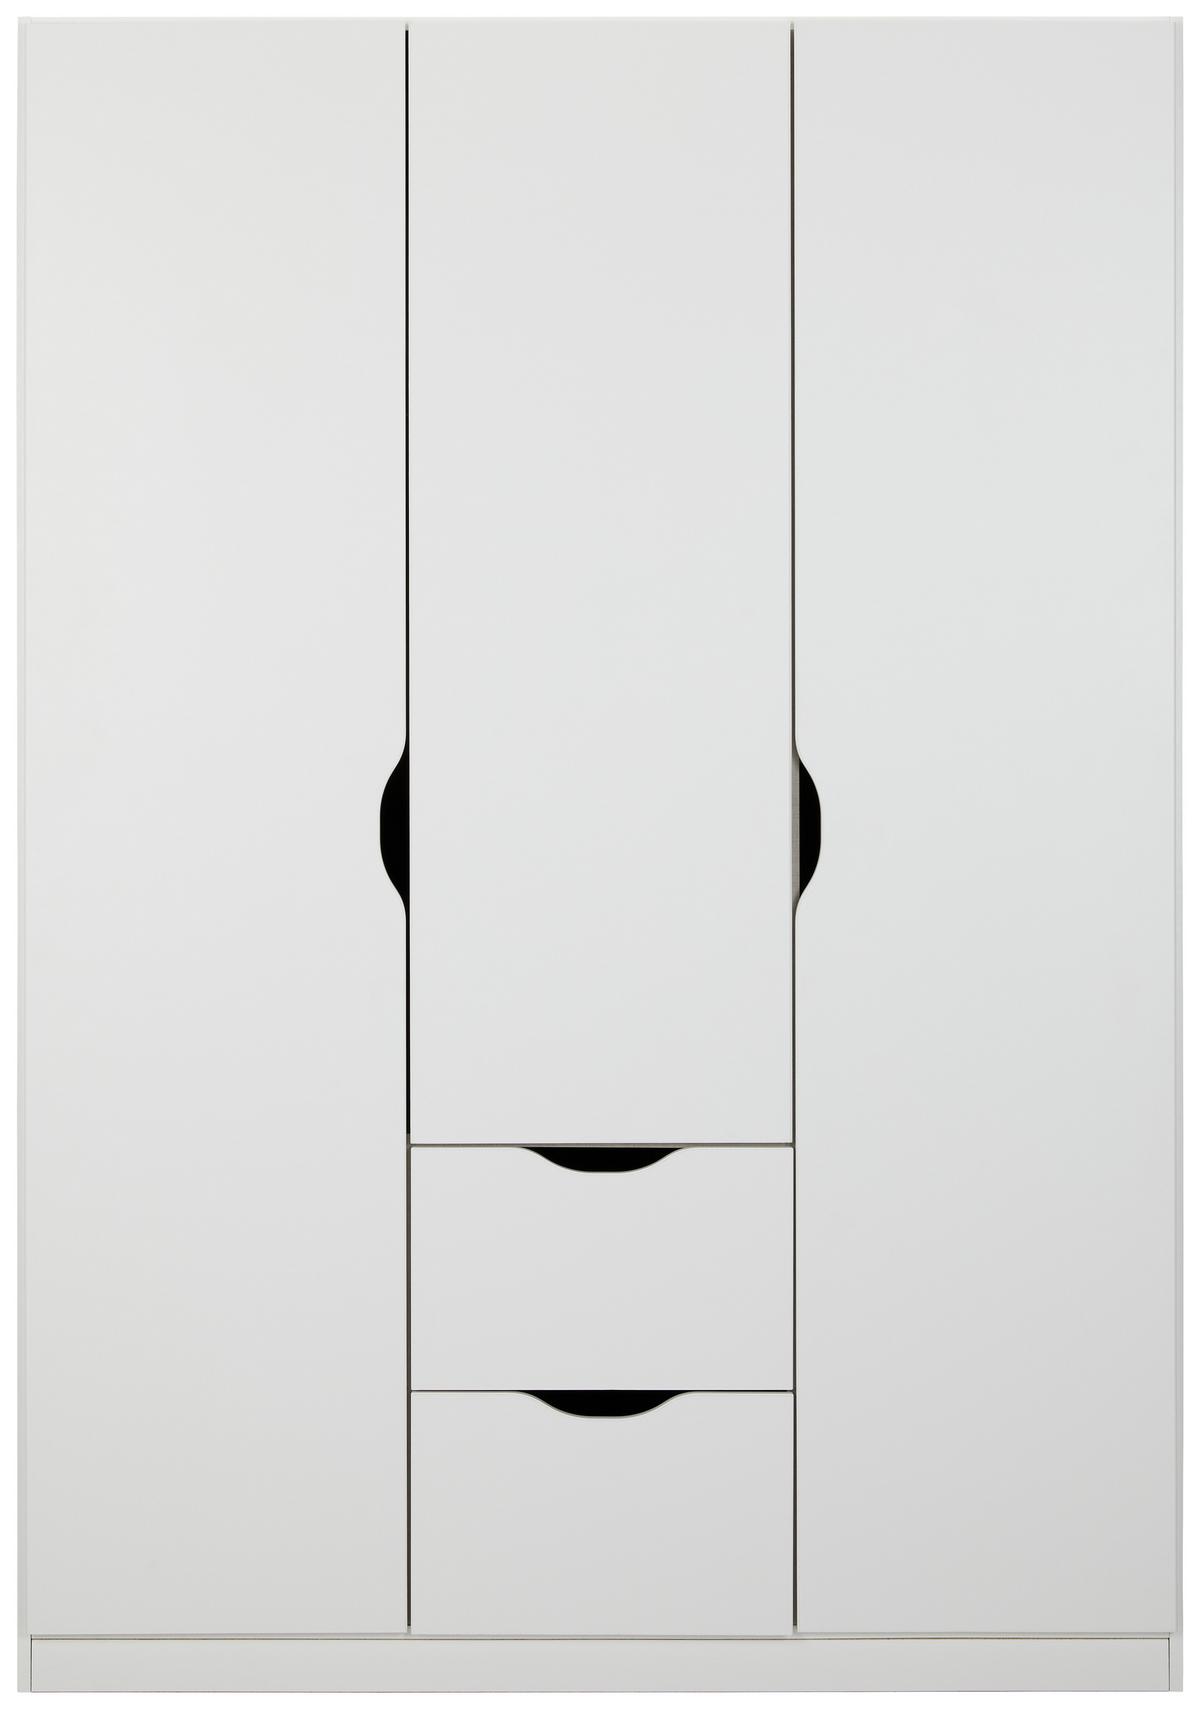 Skříň S Otočnými Dveřmi White - bílá, Moderní, kompozitní dřevo (136/197/54cm)